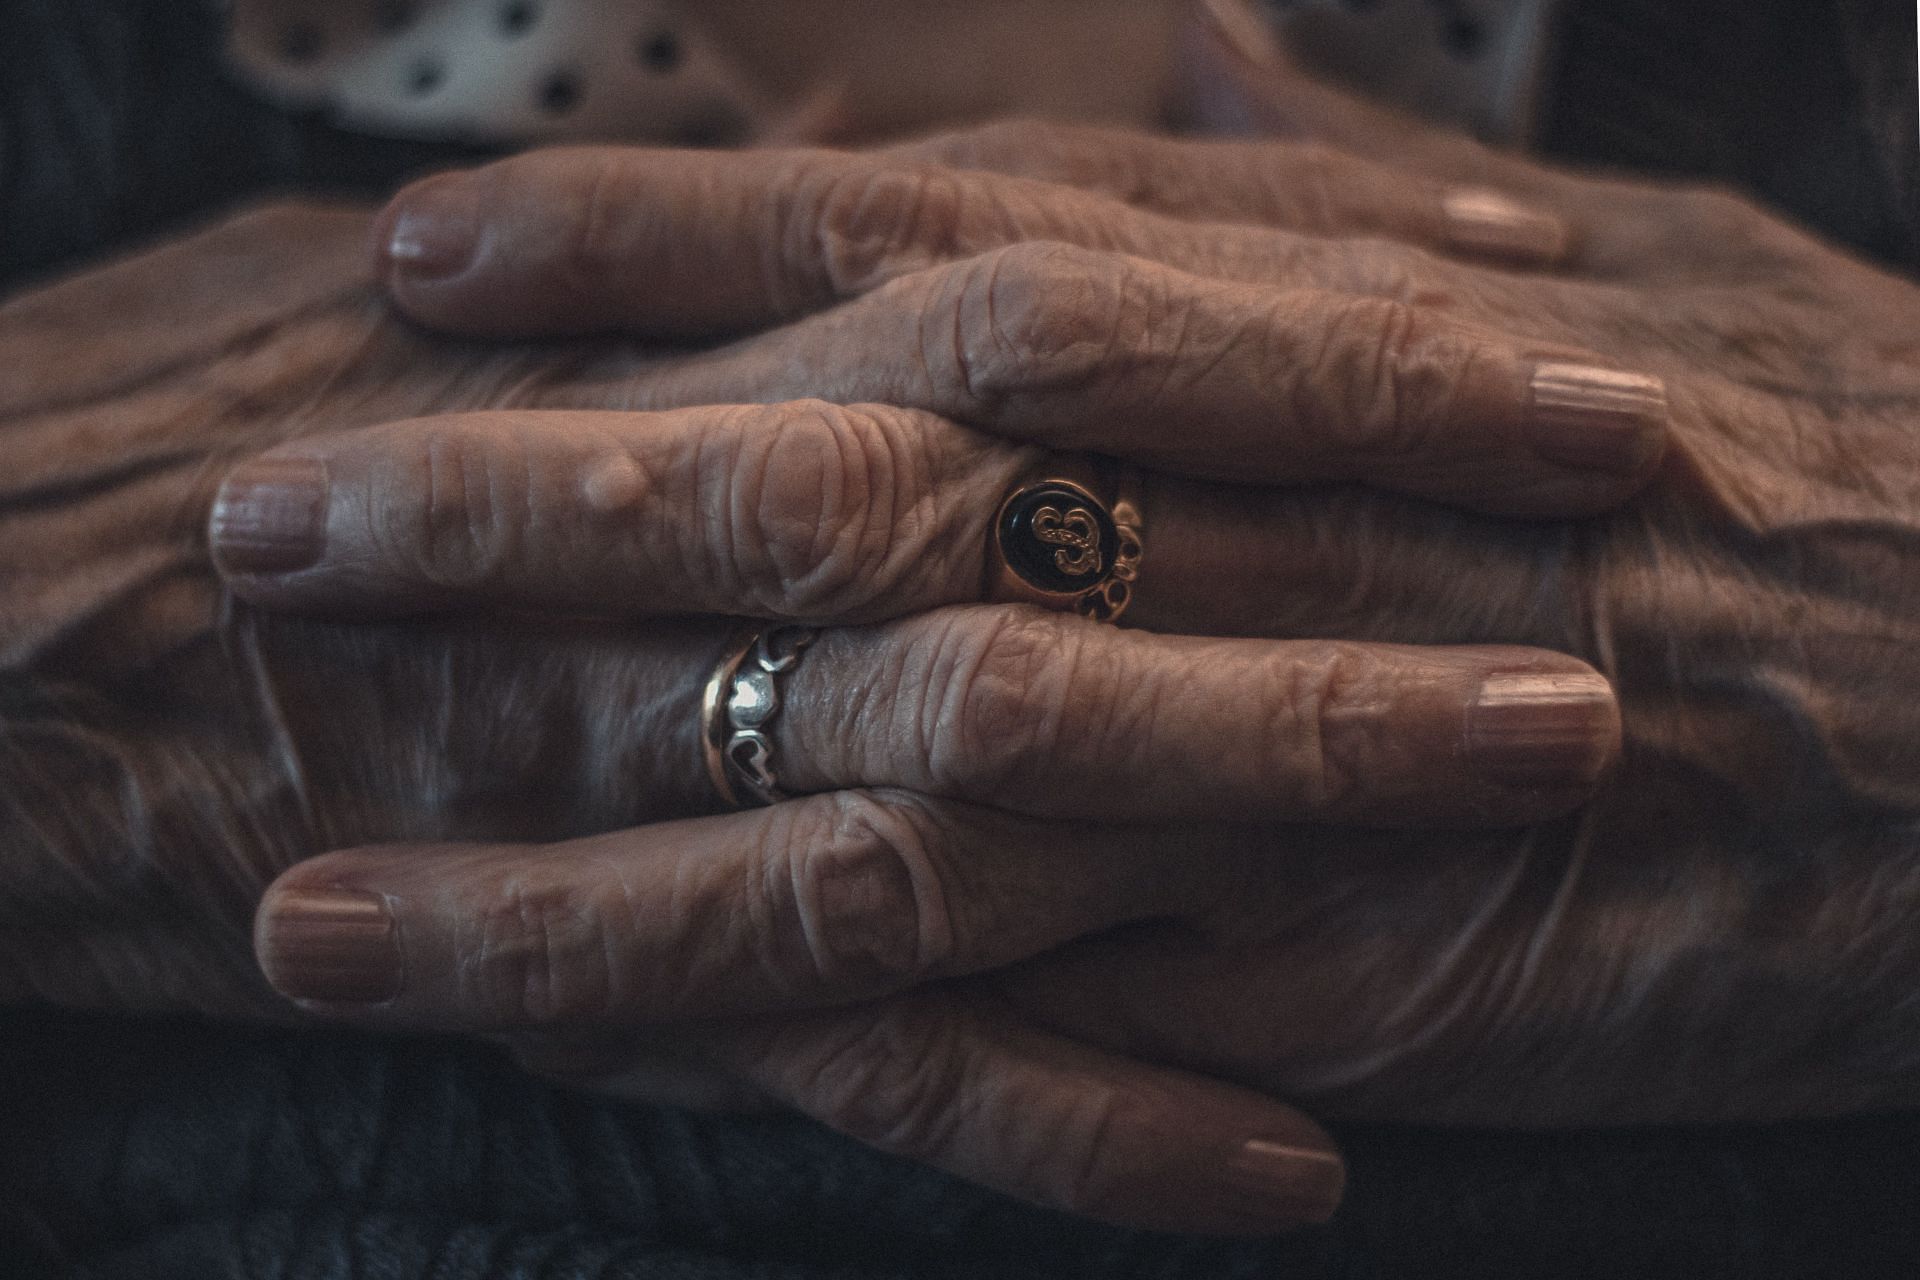 Crepey skin is marked by wrinkles. (Image via Pexels/ Mihuel)